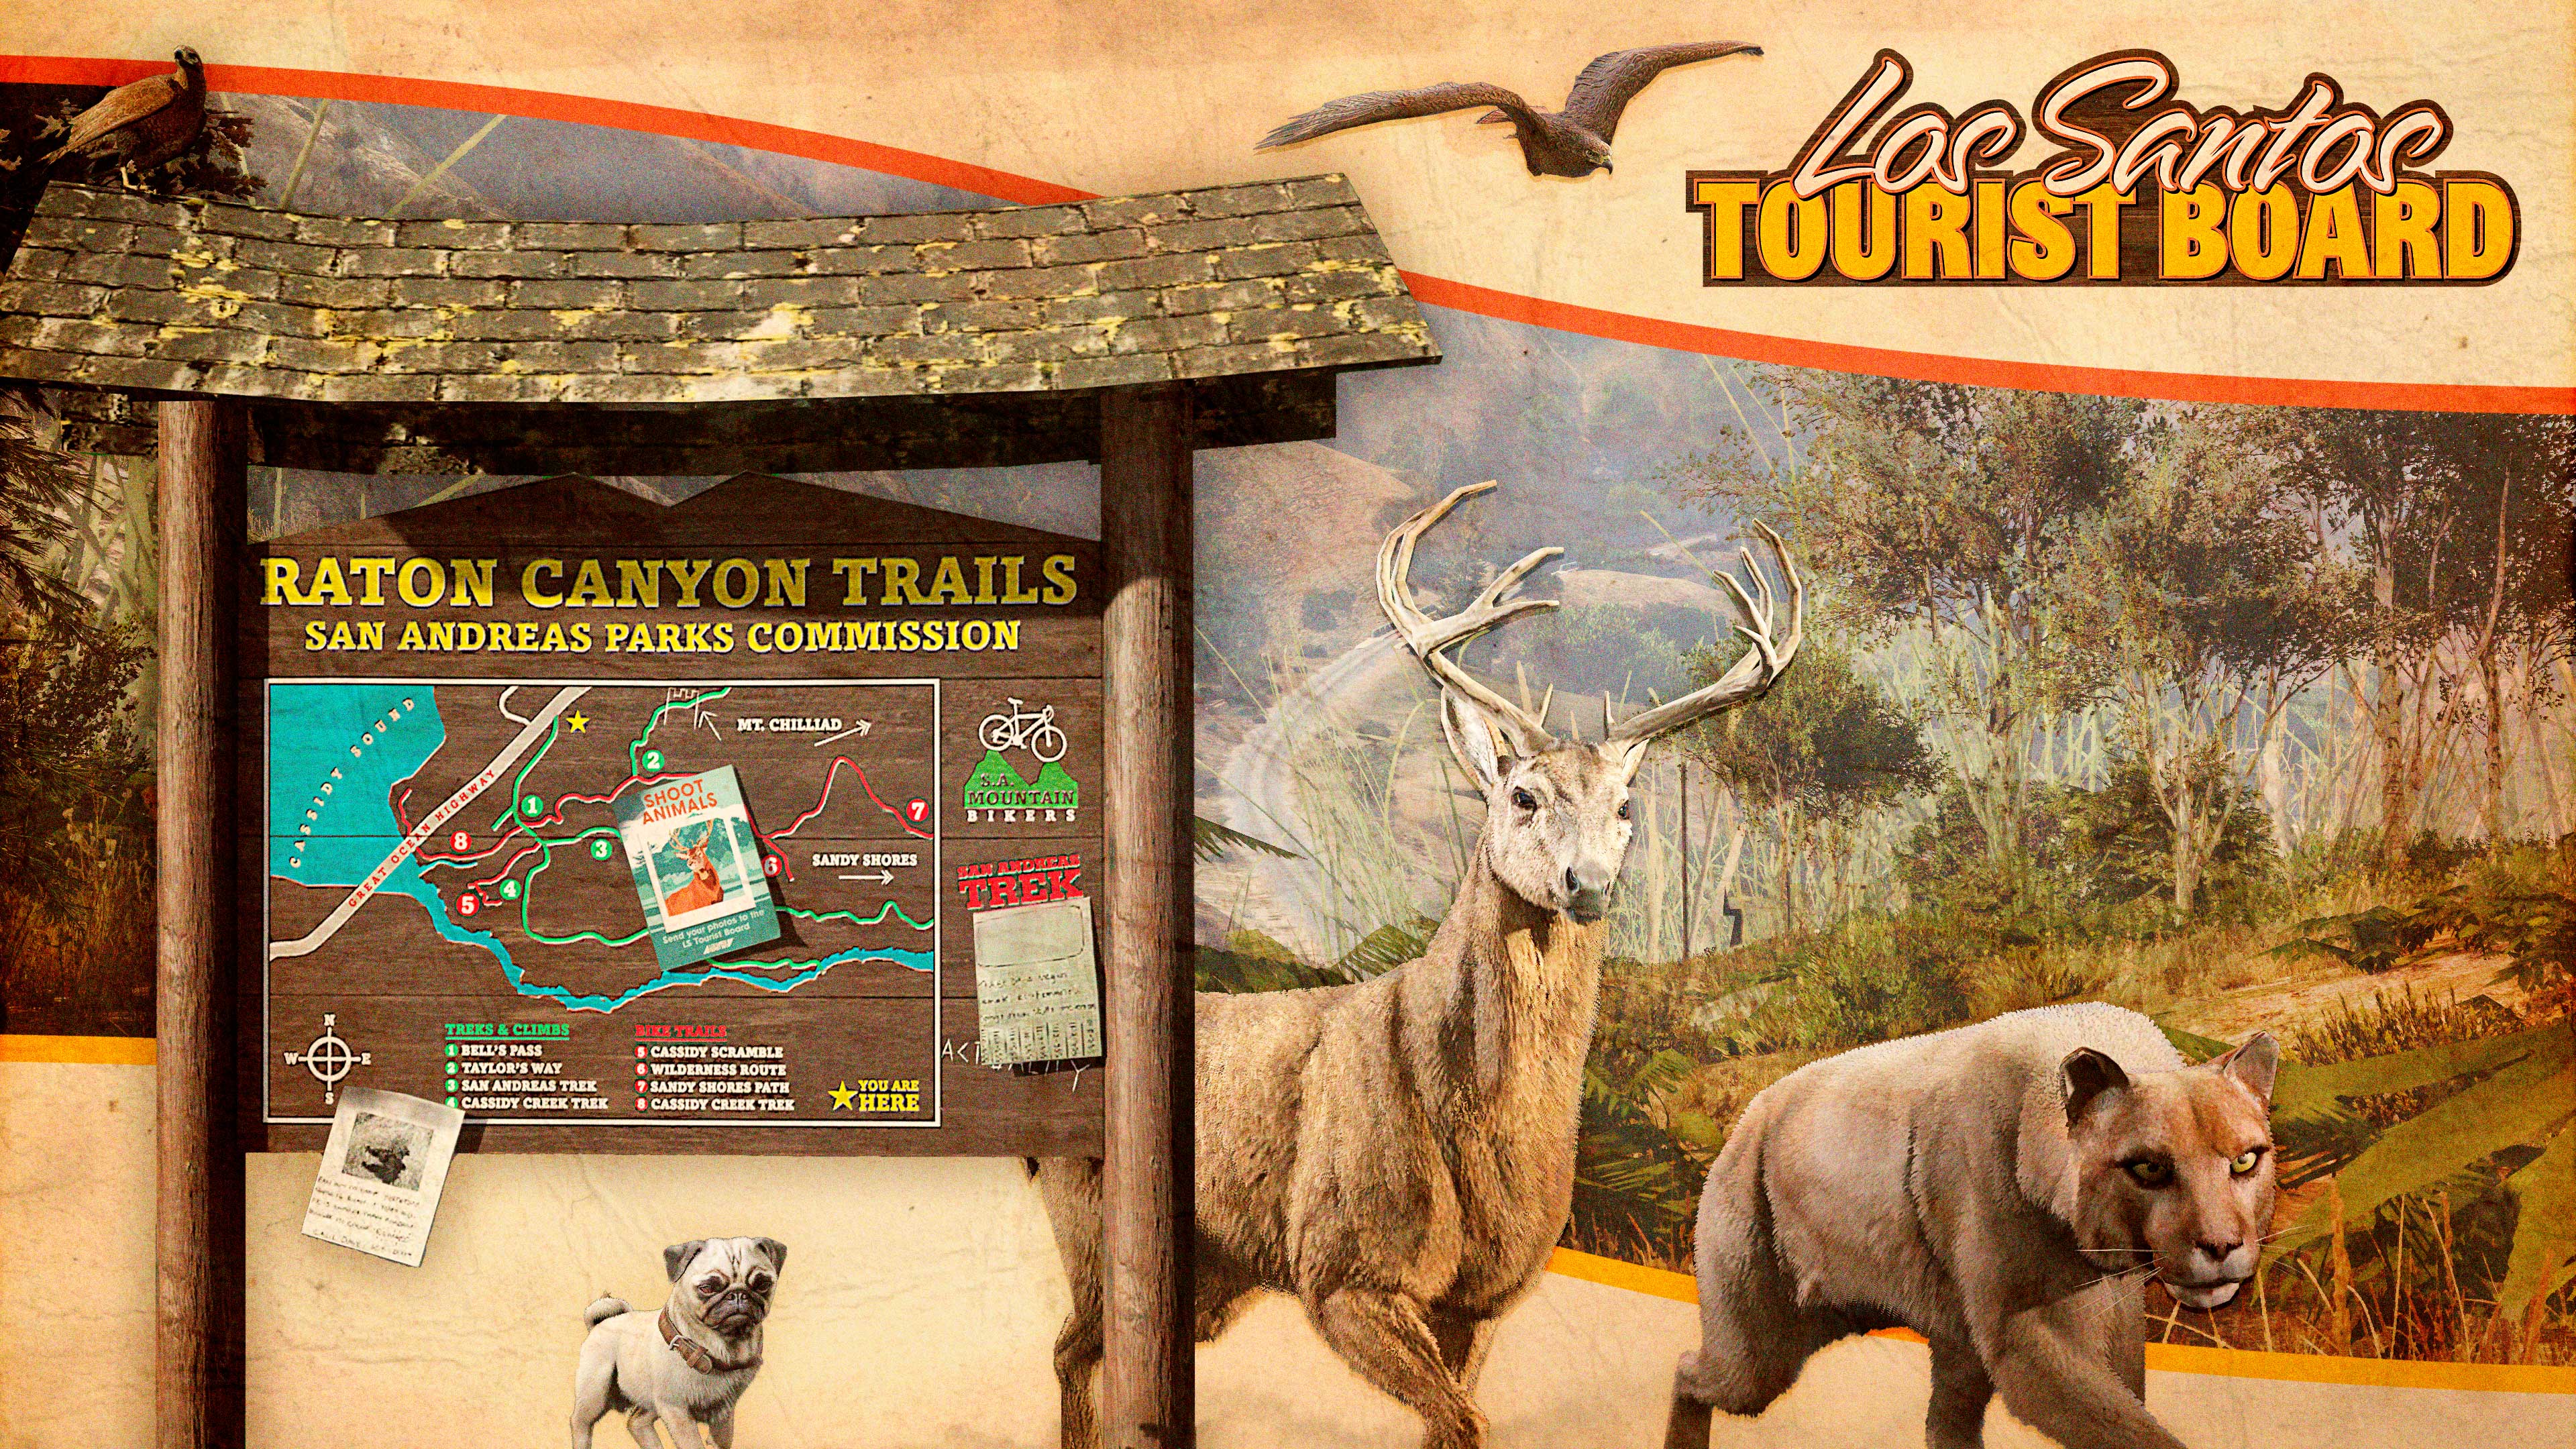 Pôster do quadro de avisos do Conselho Turístico LS em Raton Canyon com animais selvagens ao redor: pássaros, um cervo, um leão da montanha, e um pug.